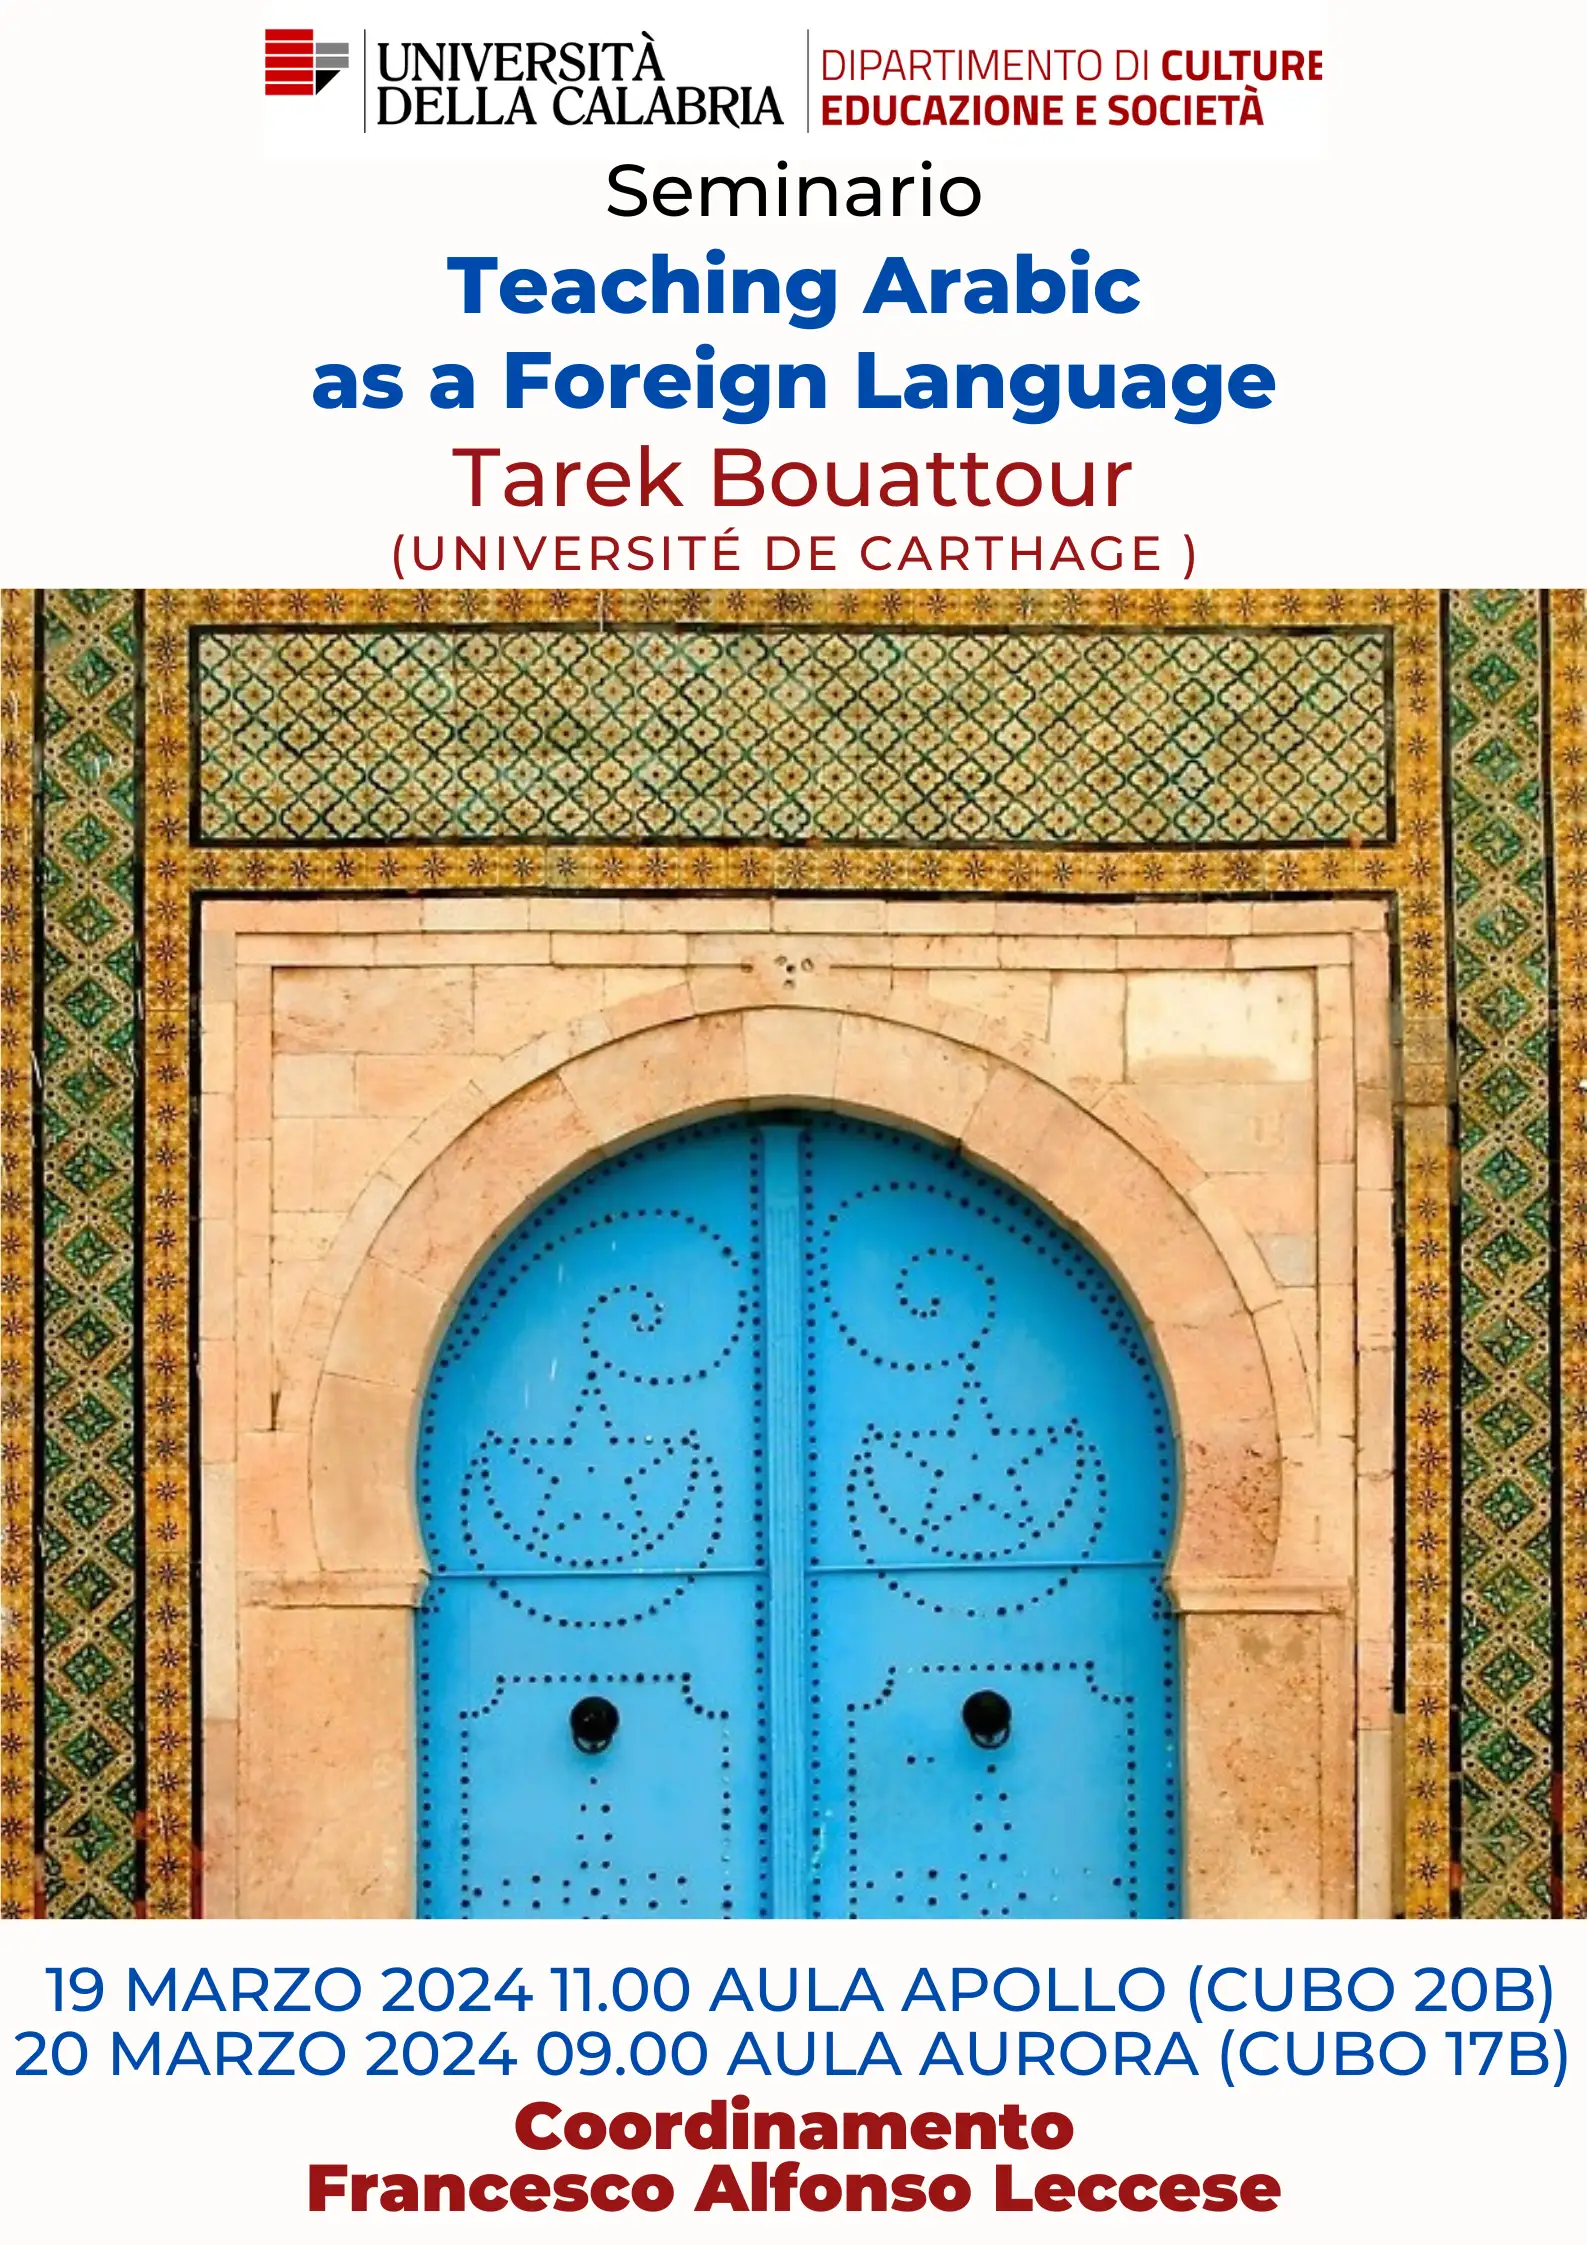 Seminario "Teaching Arabic as a Foreign Language"